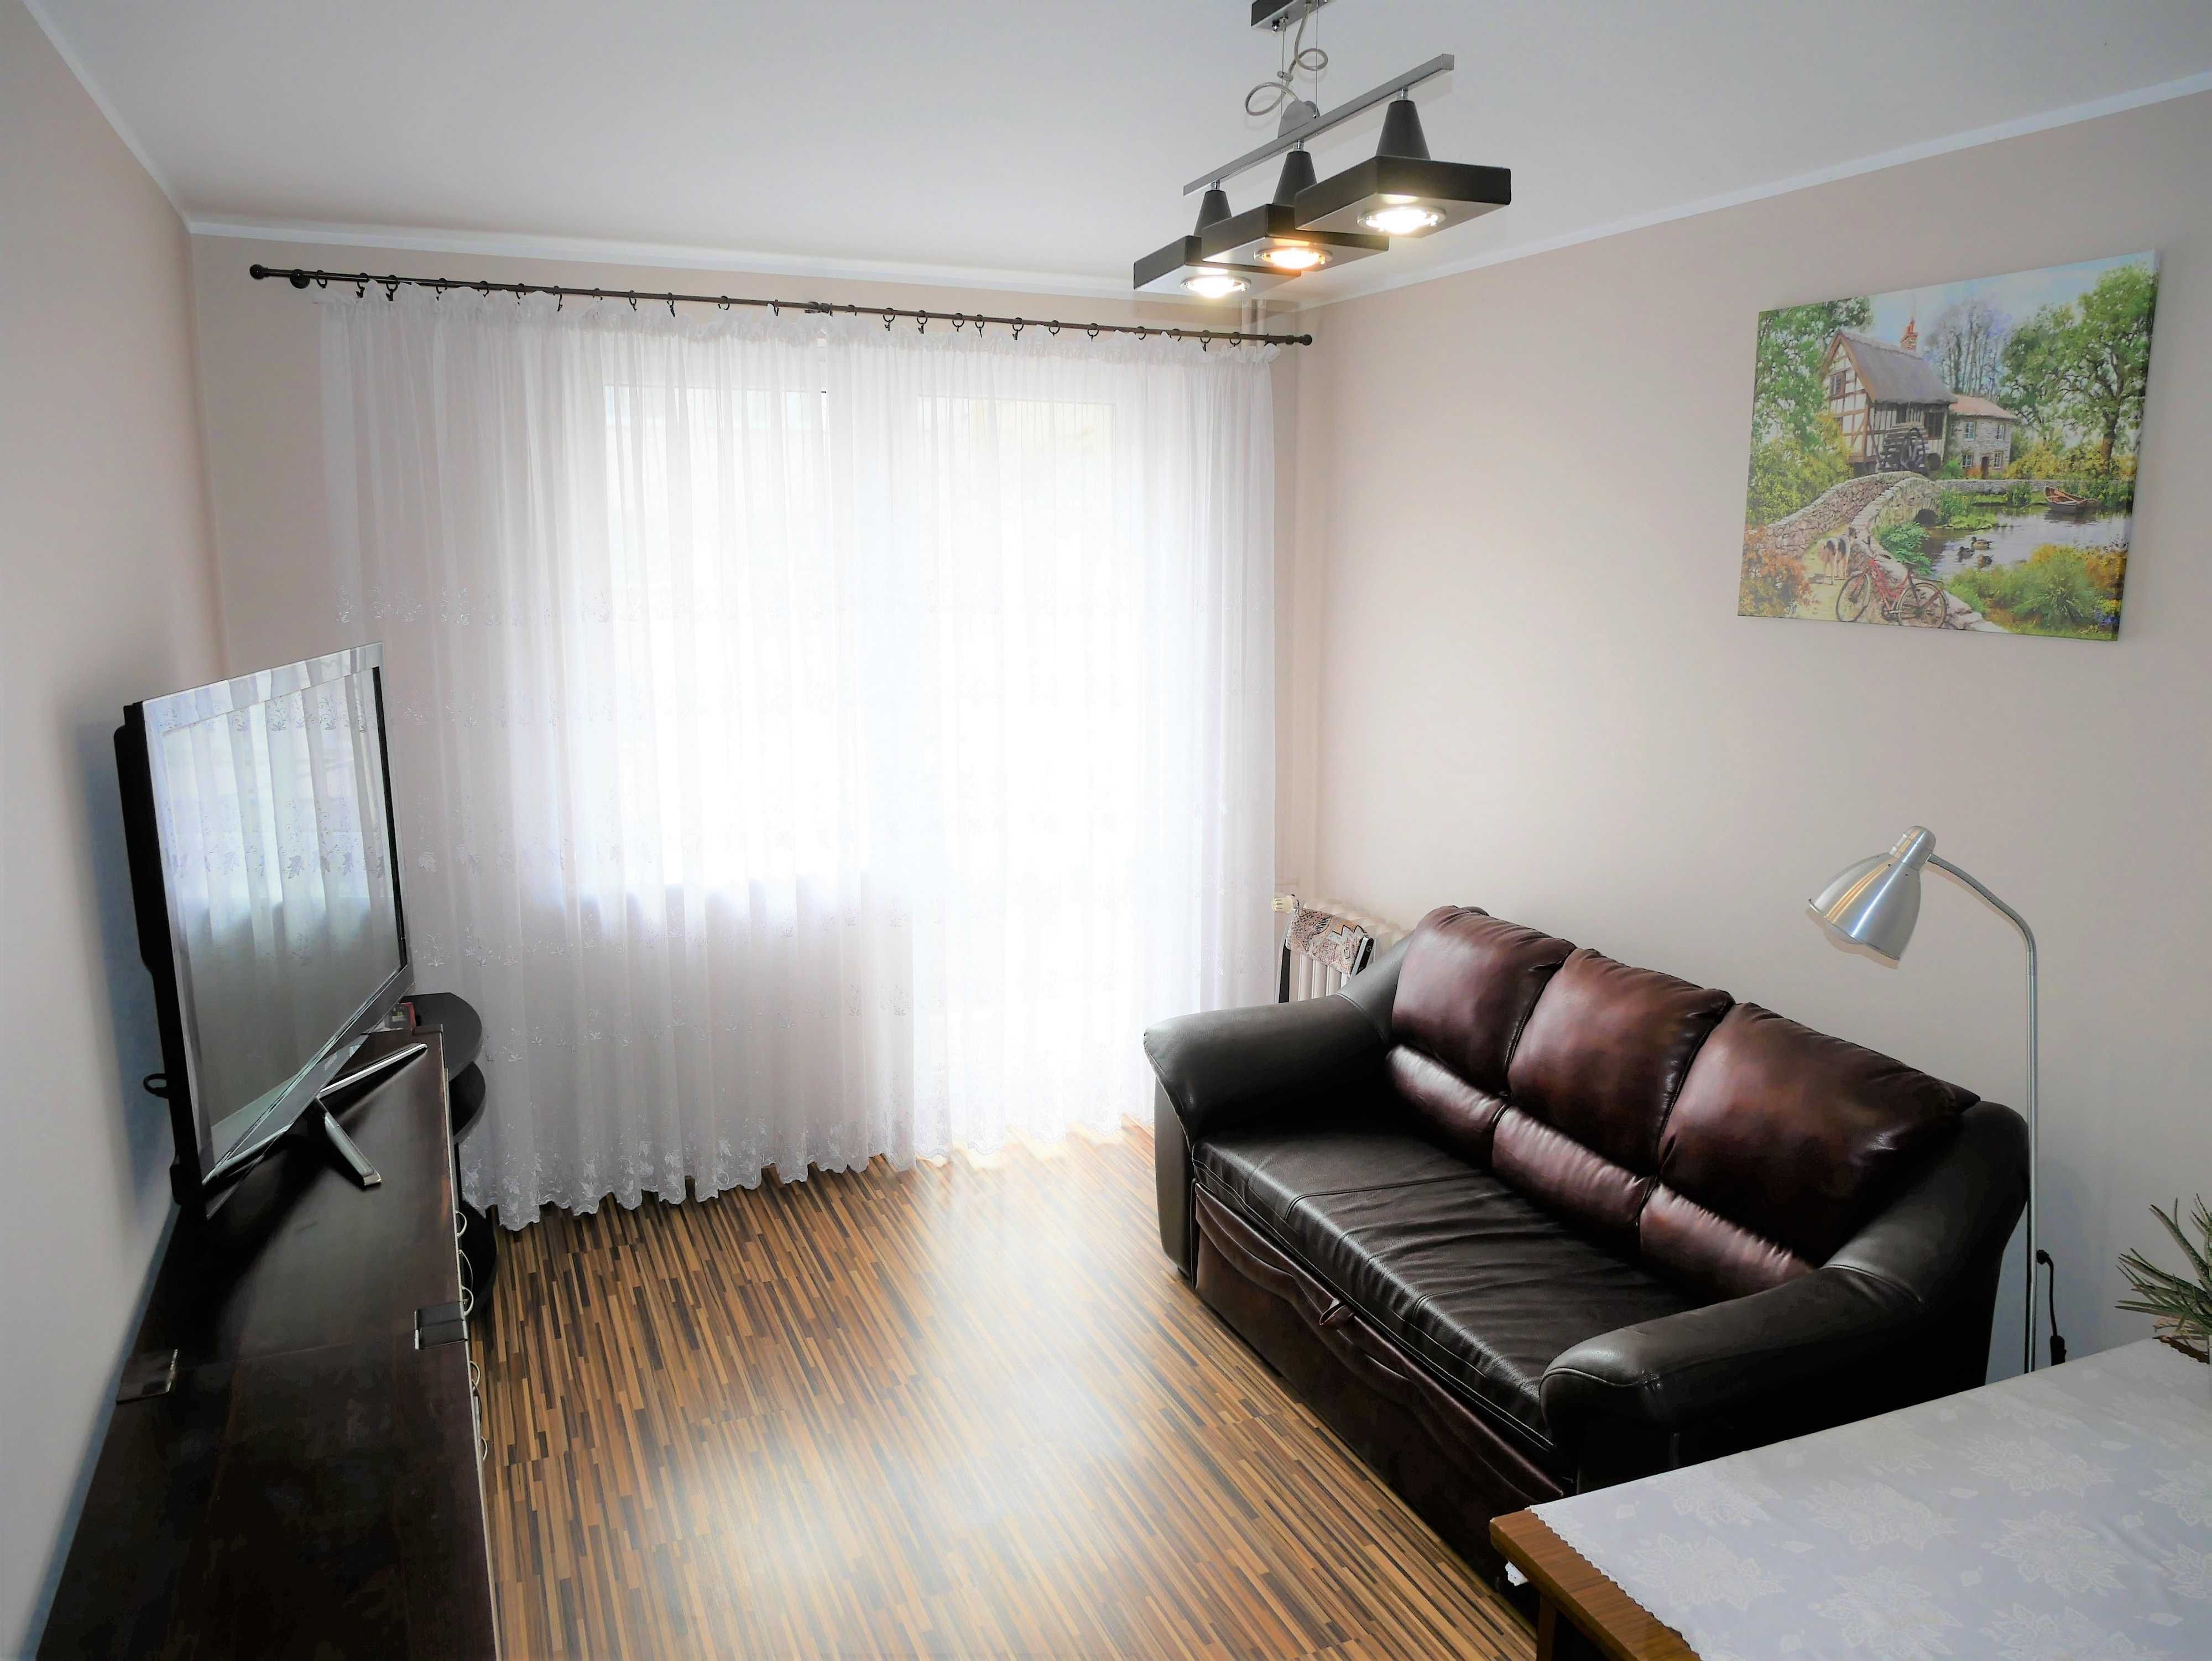 Mieszkanie wyposażone meble balkon piwnica Września 2p. 33,2 m2